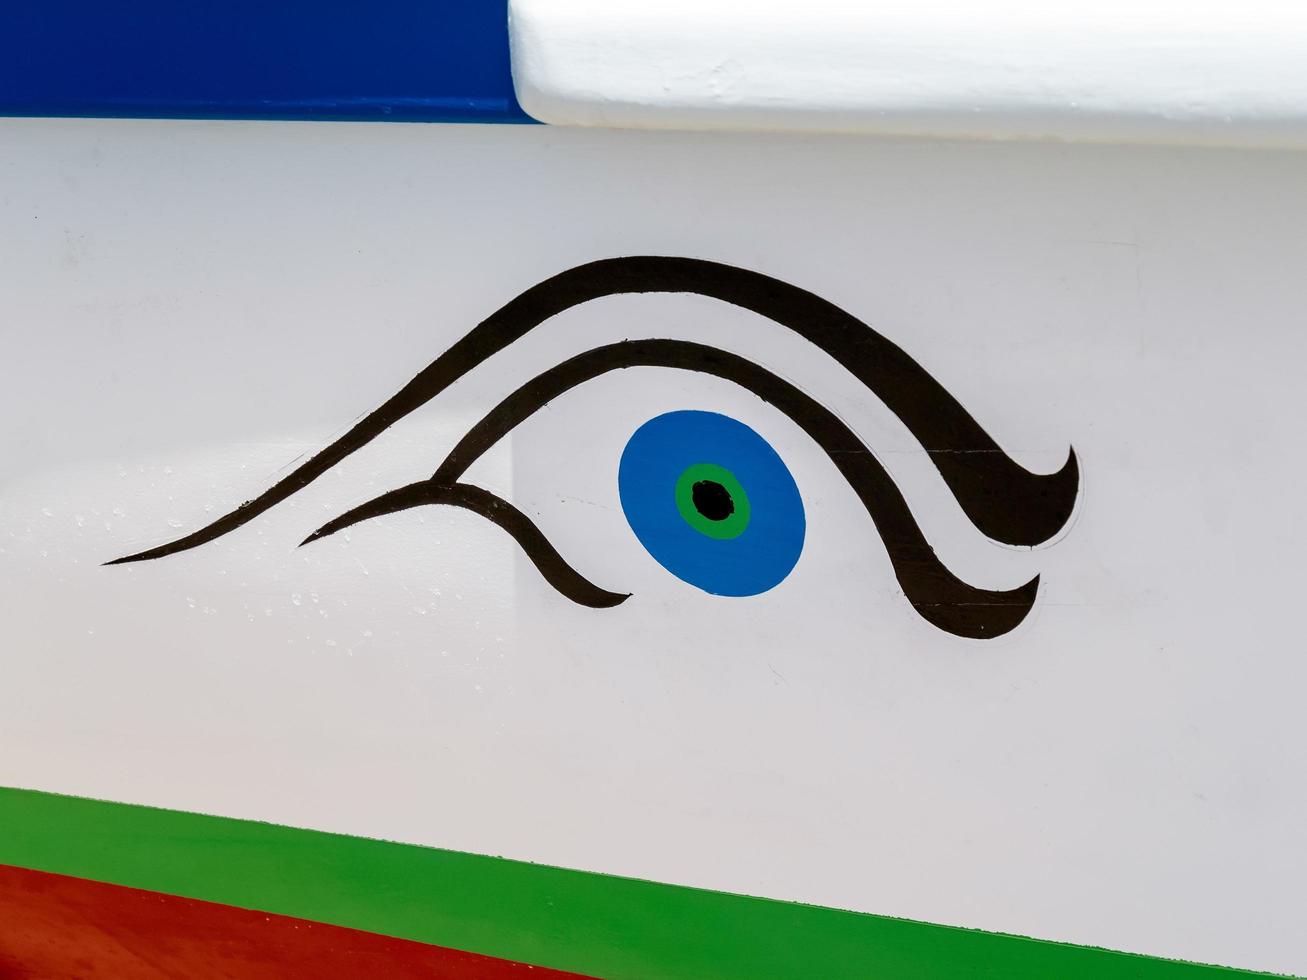 mijas la cala, andalucia, spanje, 2014. oogsymbool op een spaanse vissersboot foto